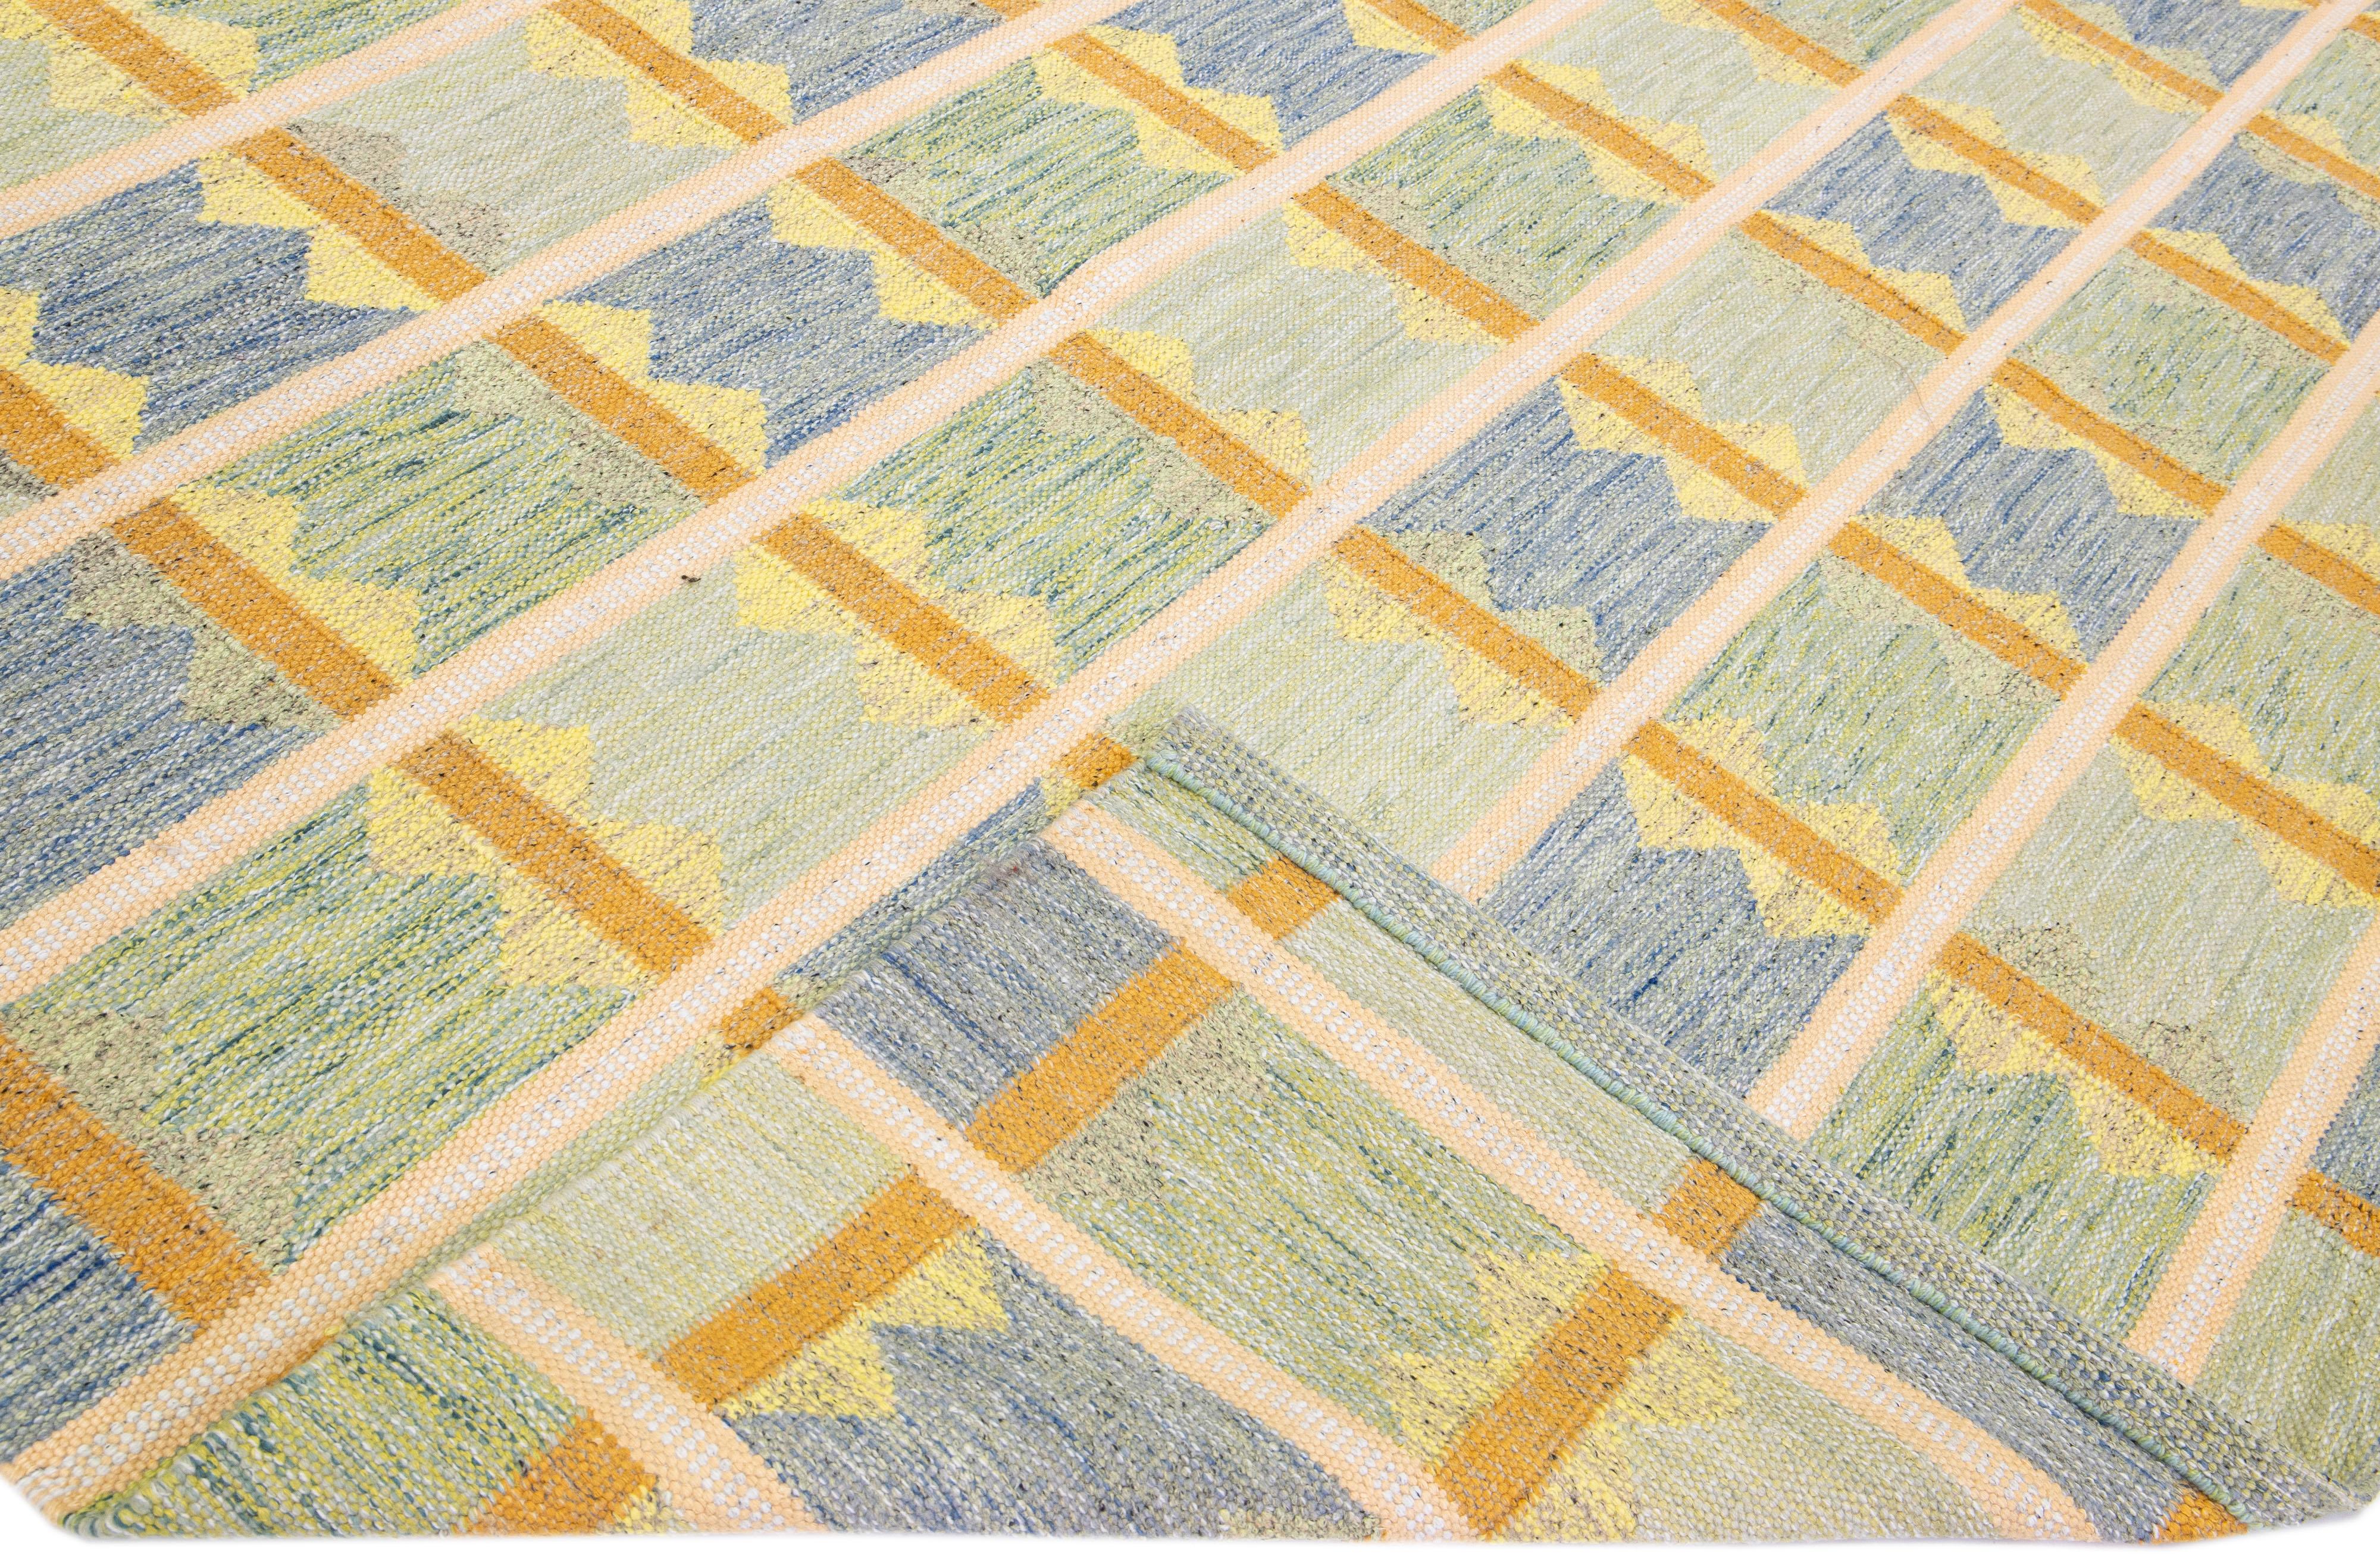 Magnifique tapis en laine de style scandinave avec un champ vert. Ce tapis moderne présente des accents de jaune, de bleu et d'orange dans un magnifique motif géométrique.

 Ce tapis mesure : 12'2